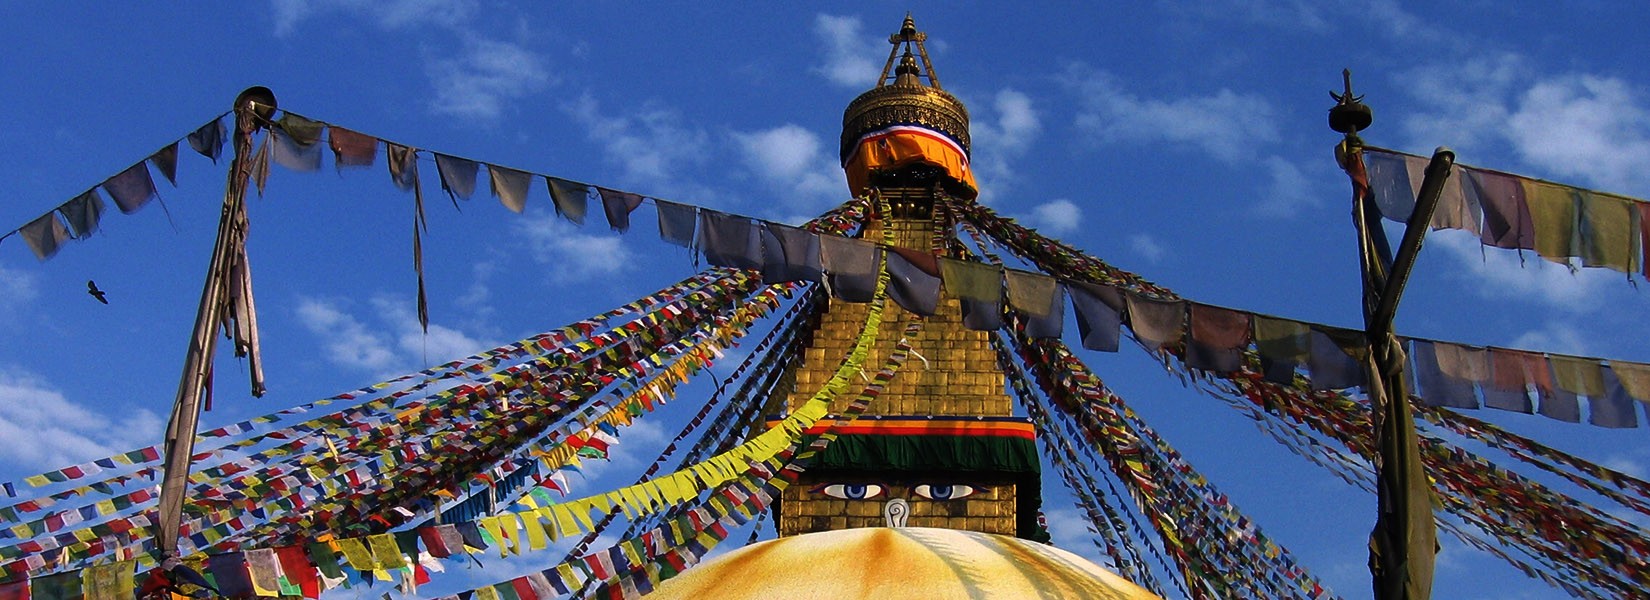 Nepal-Boudhanath-Stupa